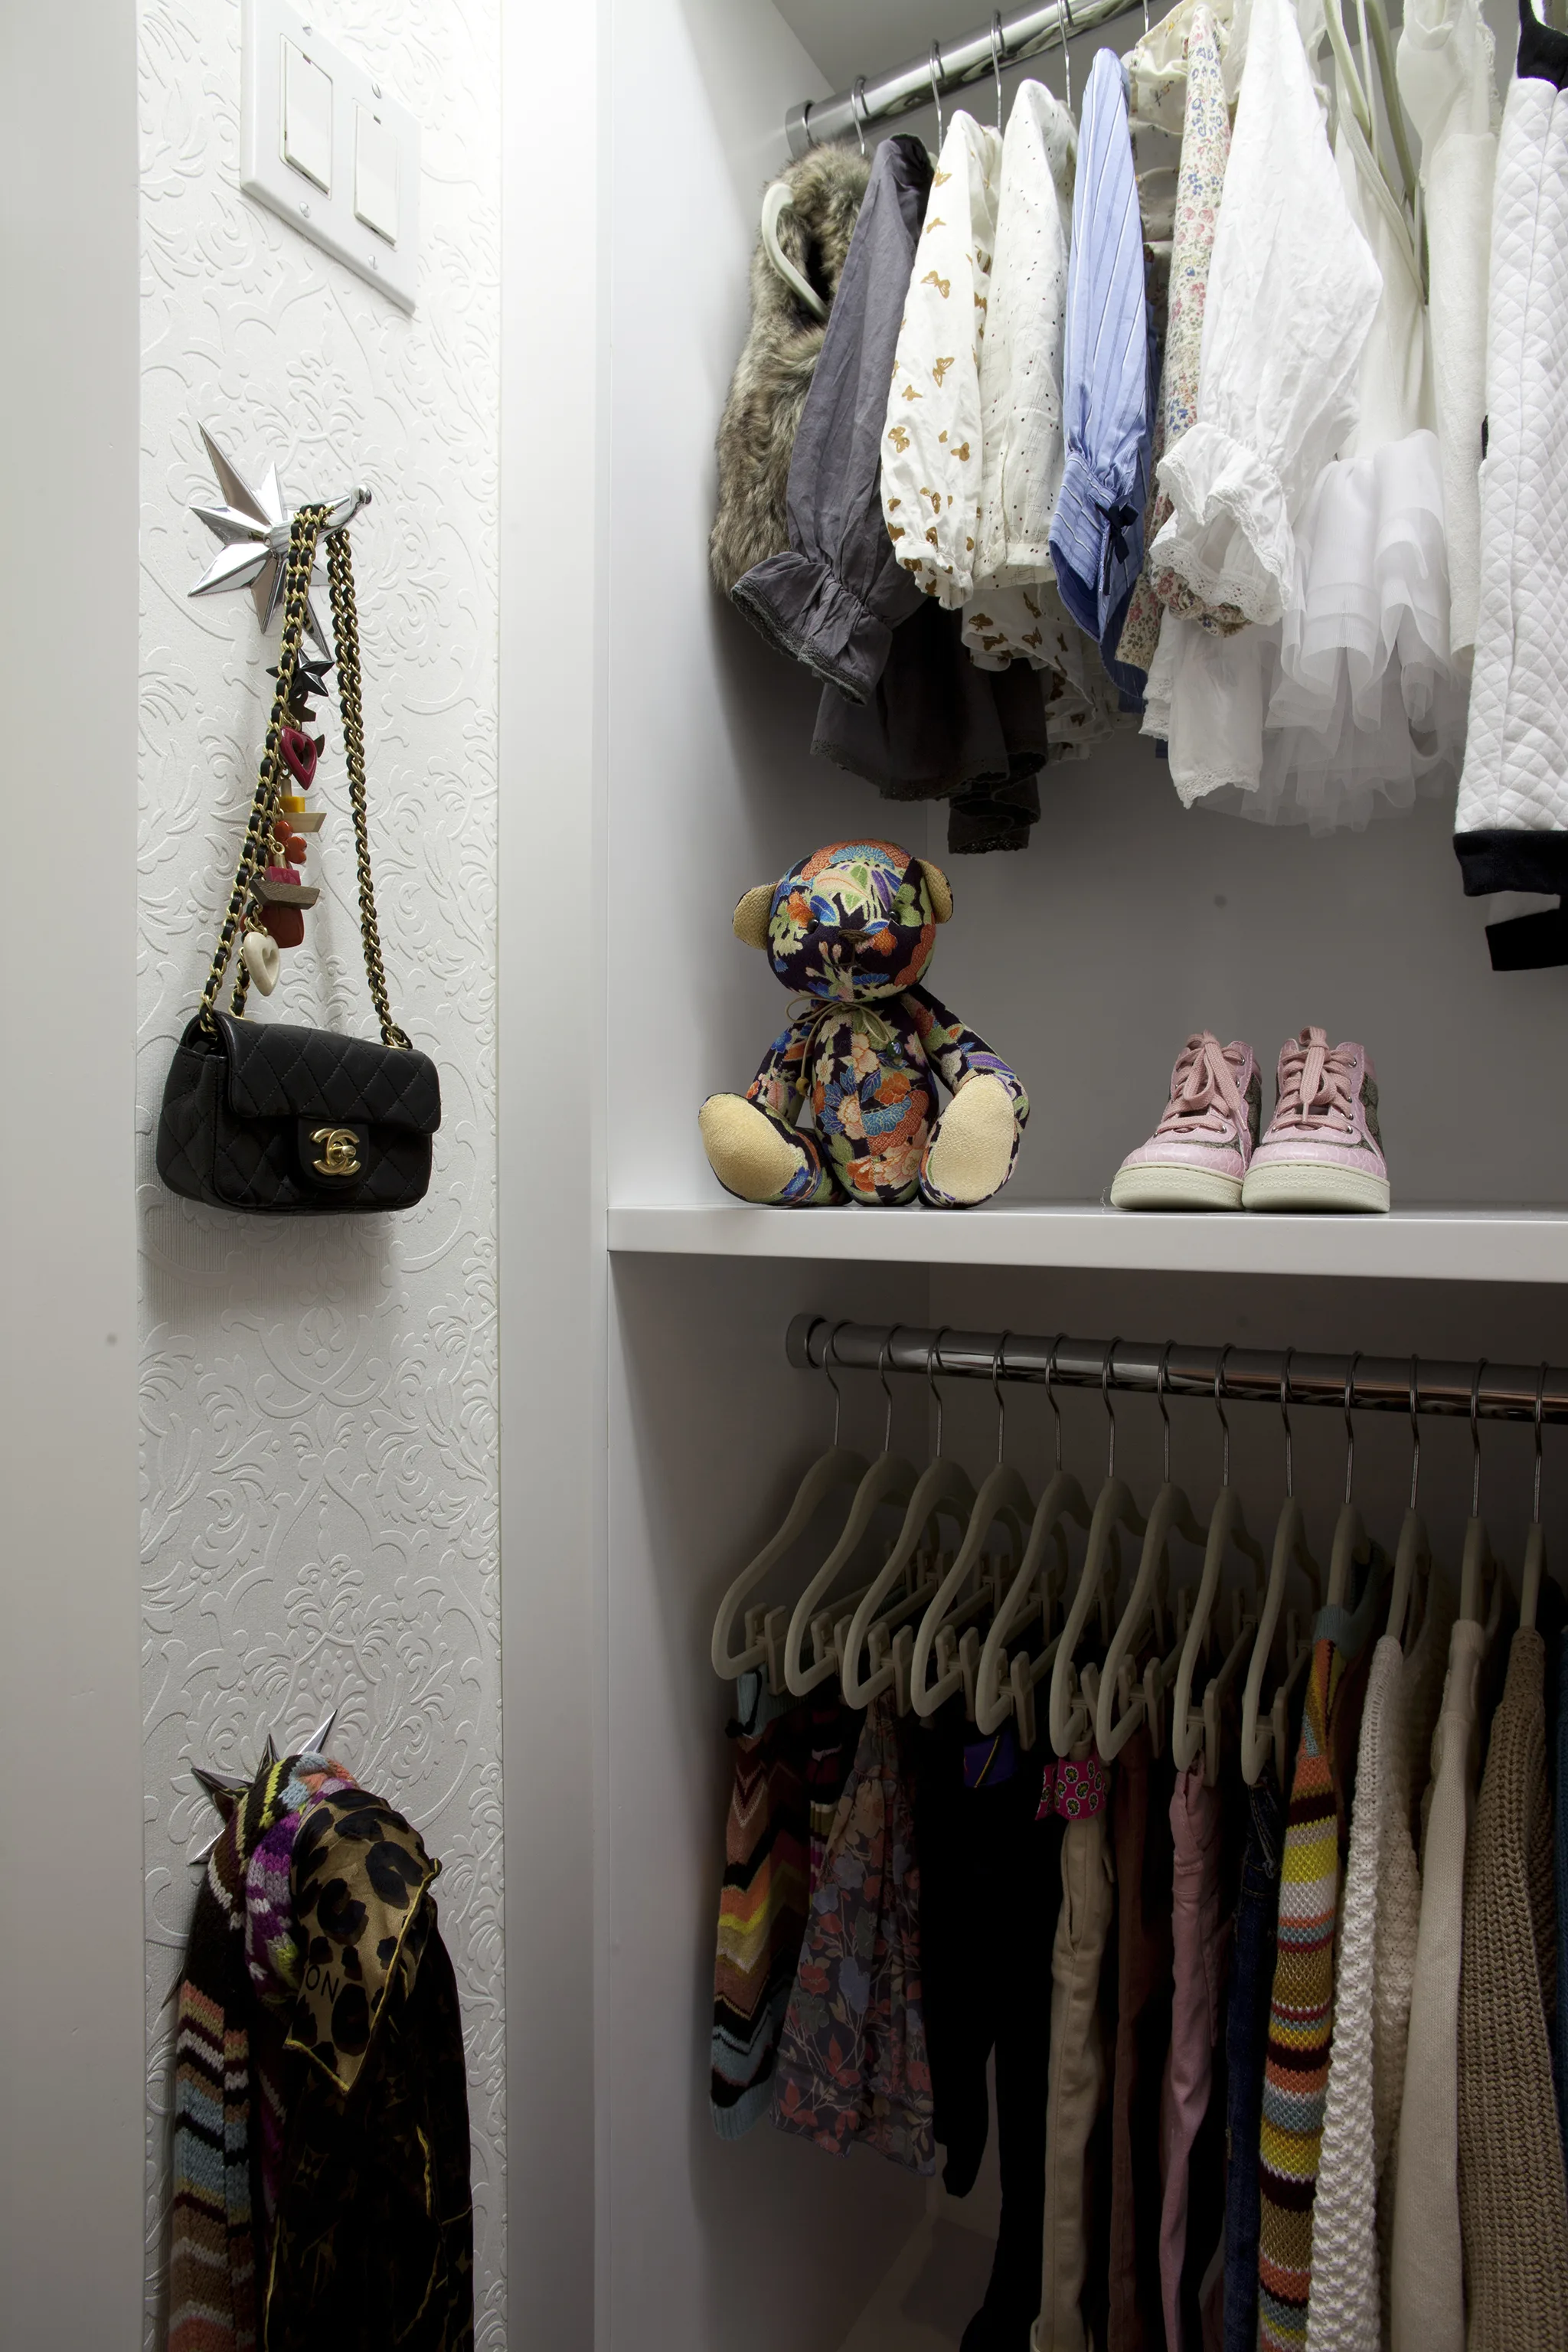 Little Girl's Closet